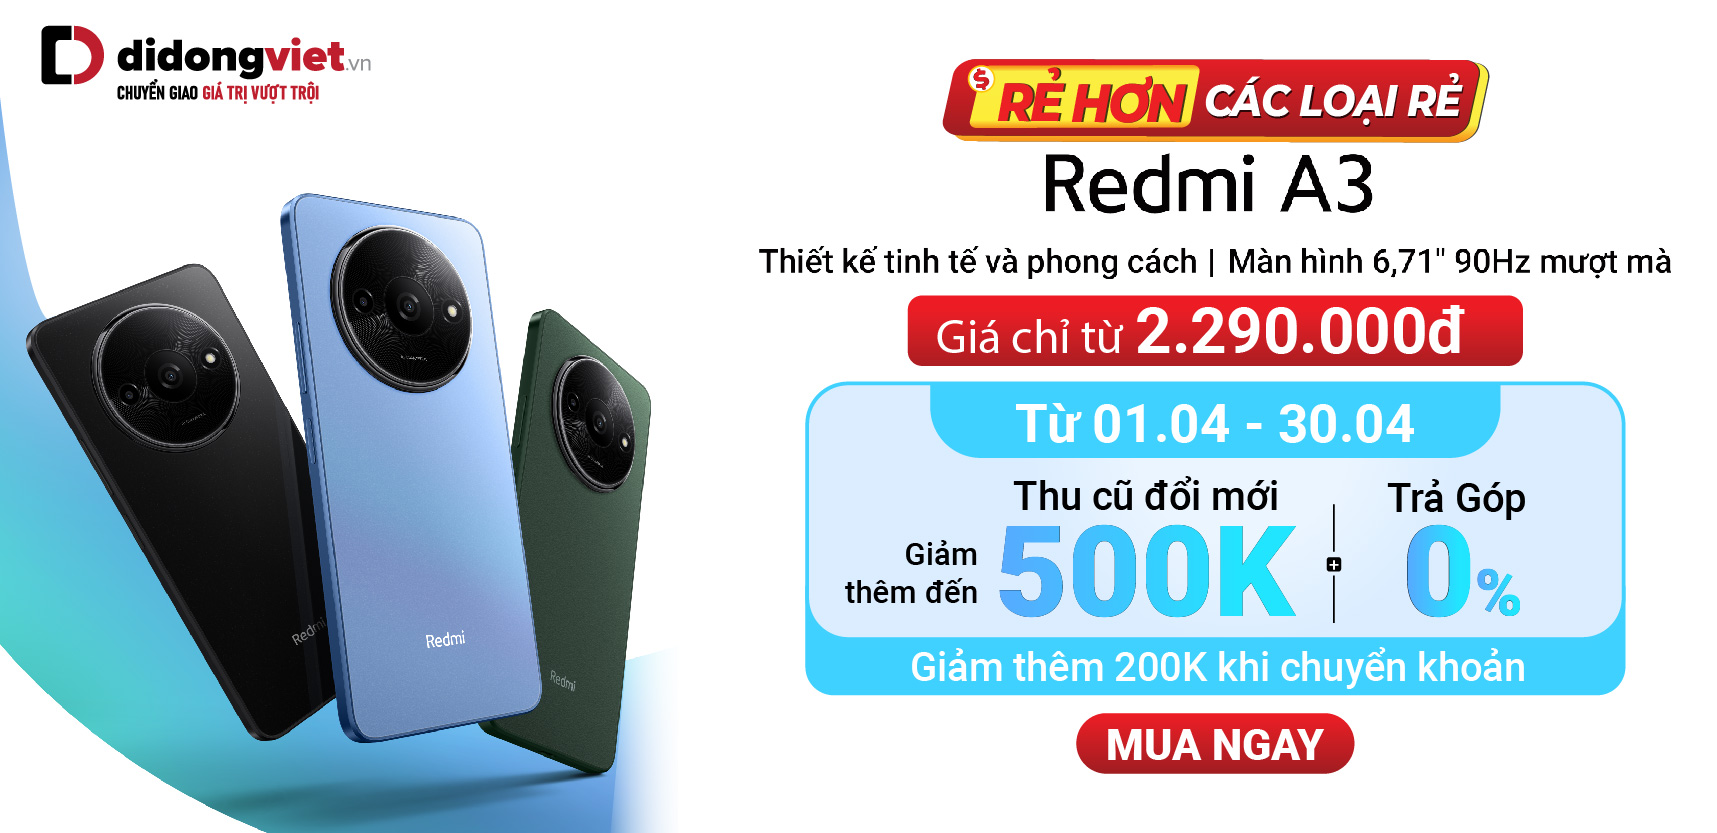 Rẻ hơn các loại rẻ: Redmi A3 128GB giá chỉ từ 2.290.000đ. Thu cũ đổi mới giảm thêm đến 500K | Tradein 2G giảm 300K. Mua ngay.